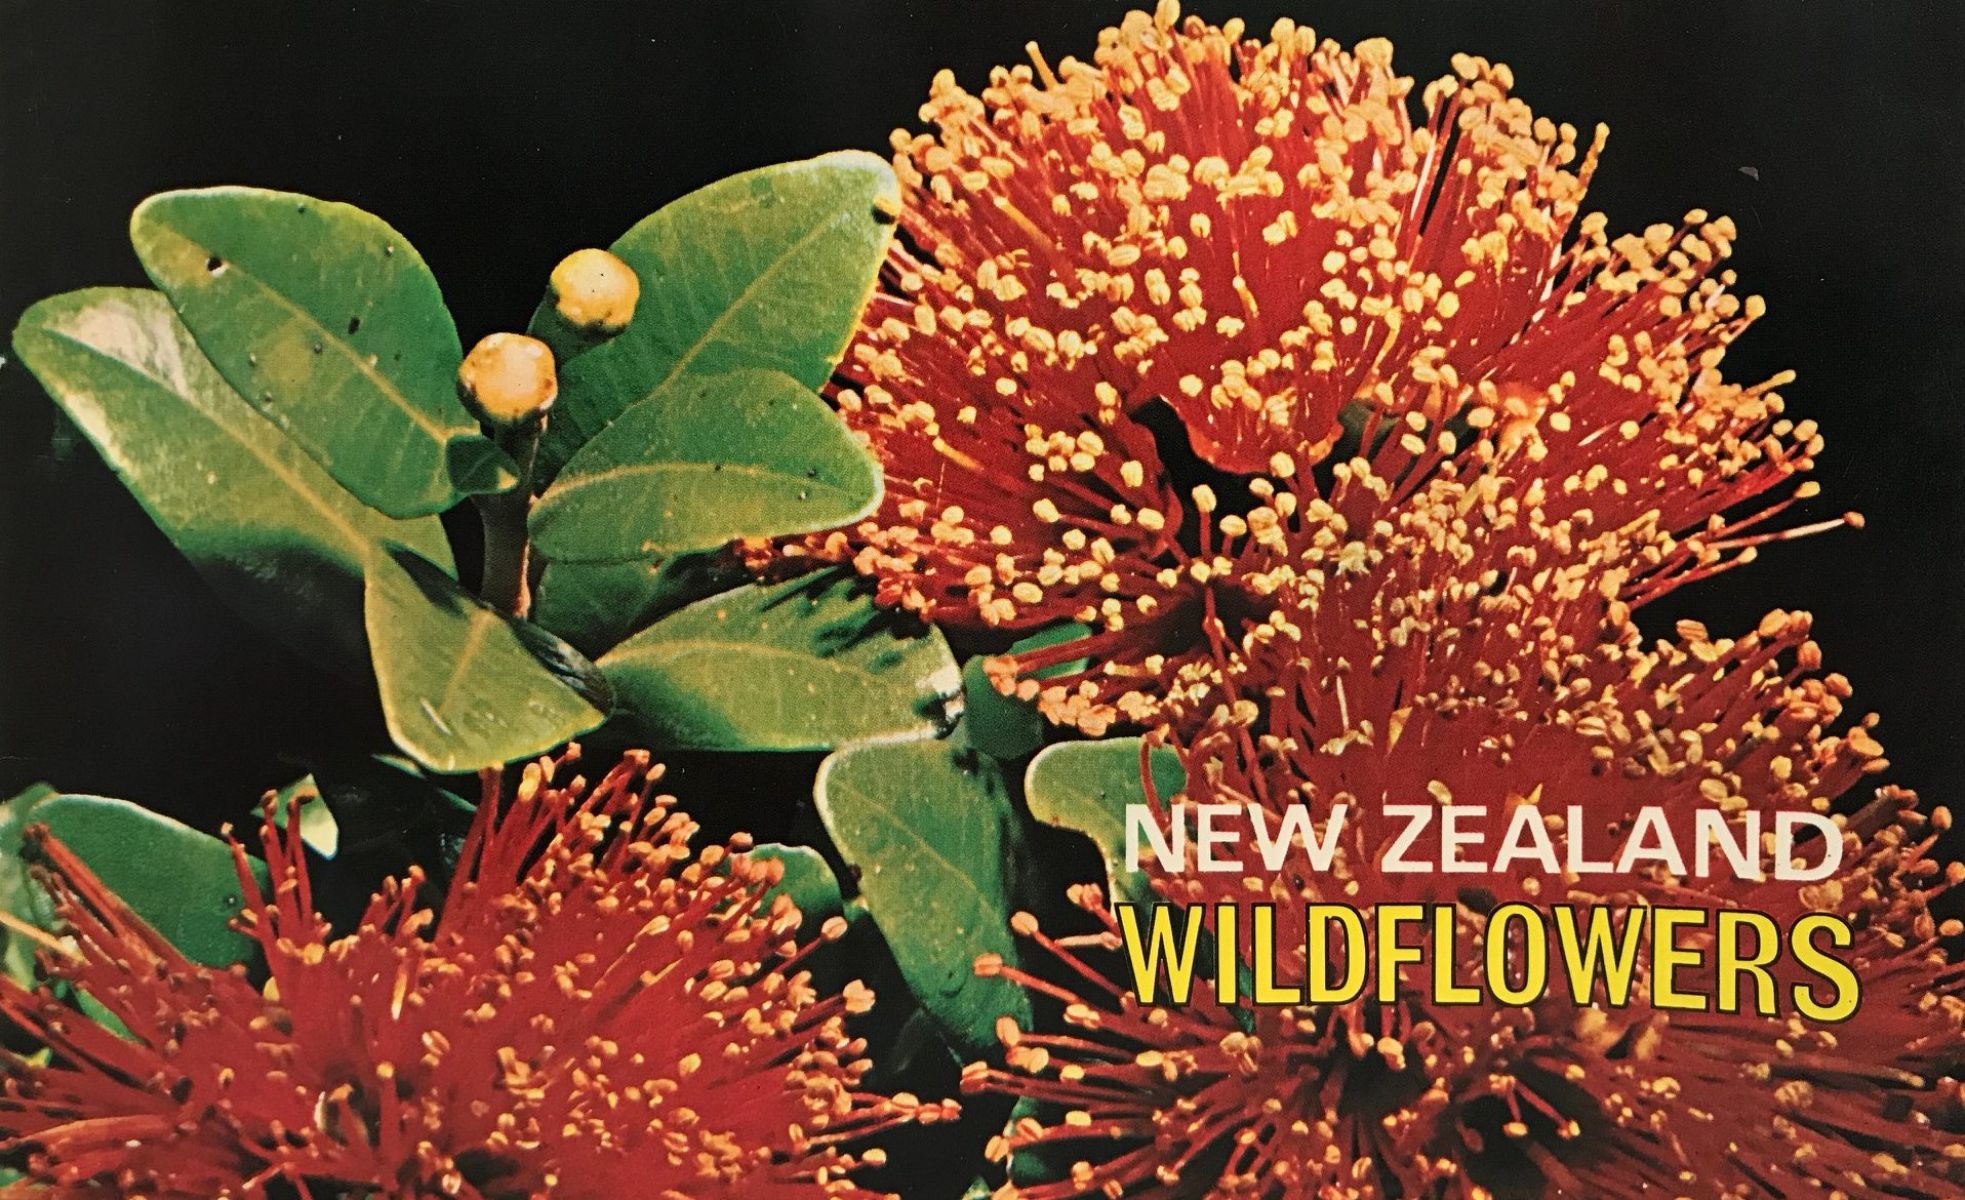 NEW ZEALAND WILDFLOWERS